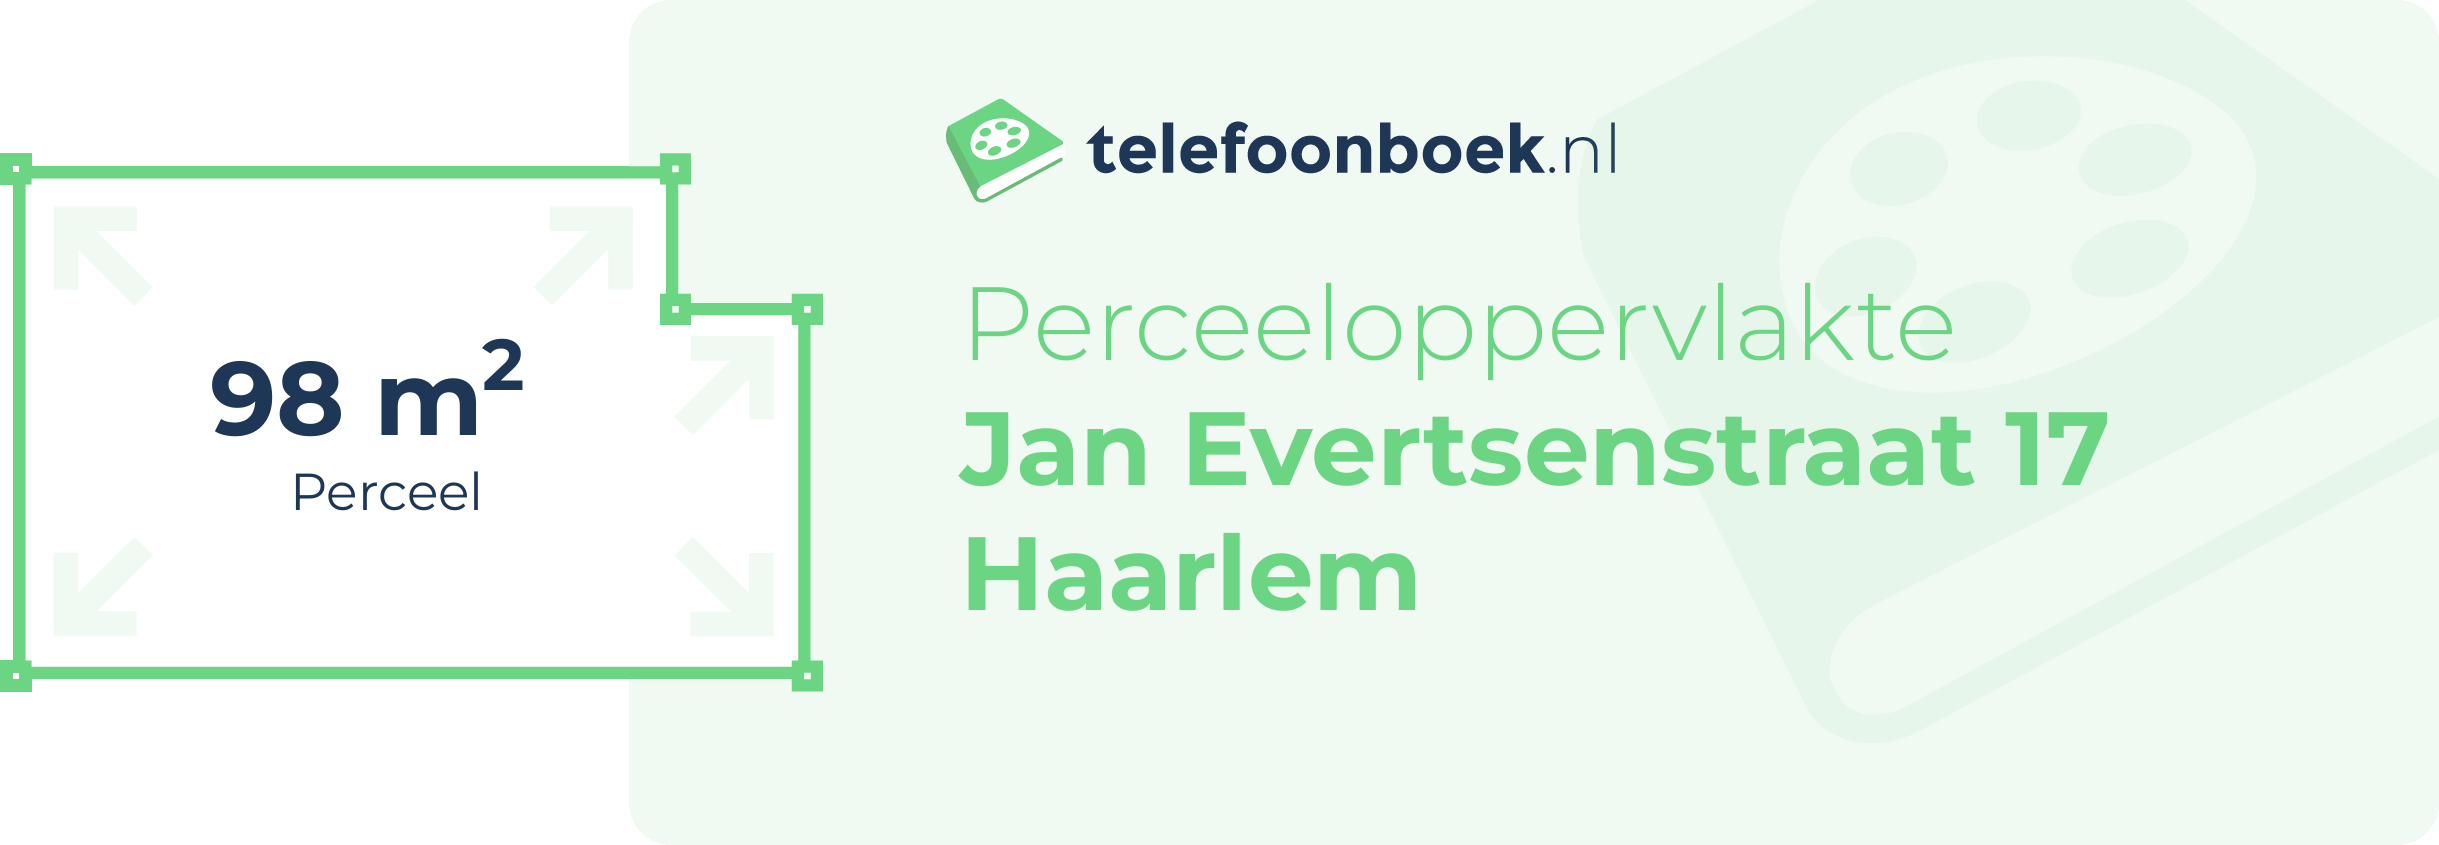 Perceeloppervlakte Jan Evertsenstraat 17 Haarlem